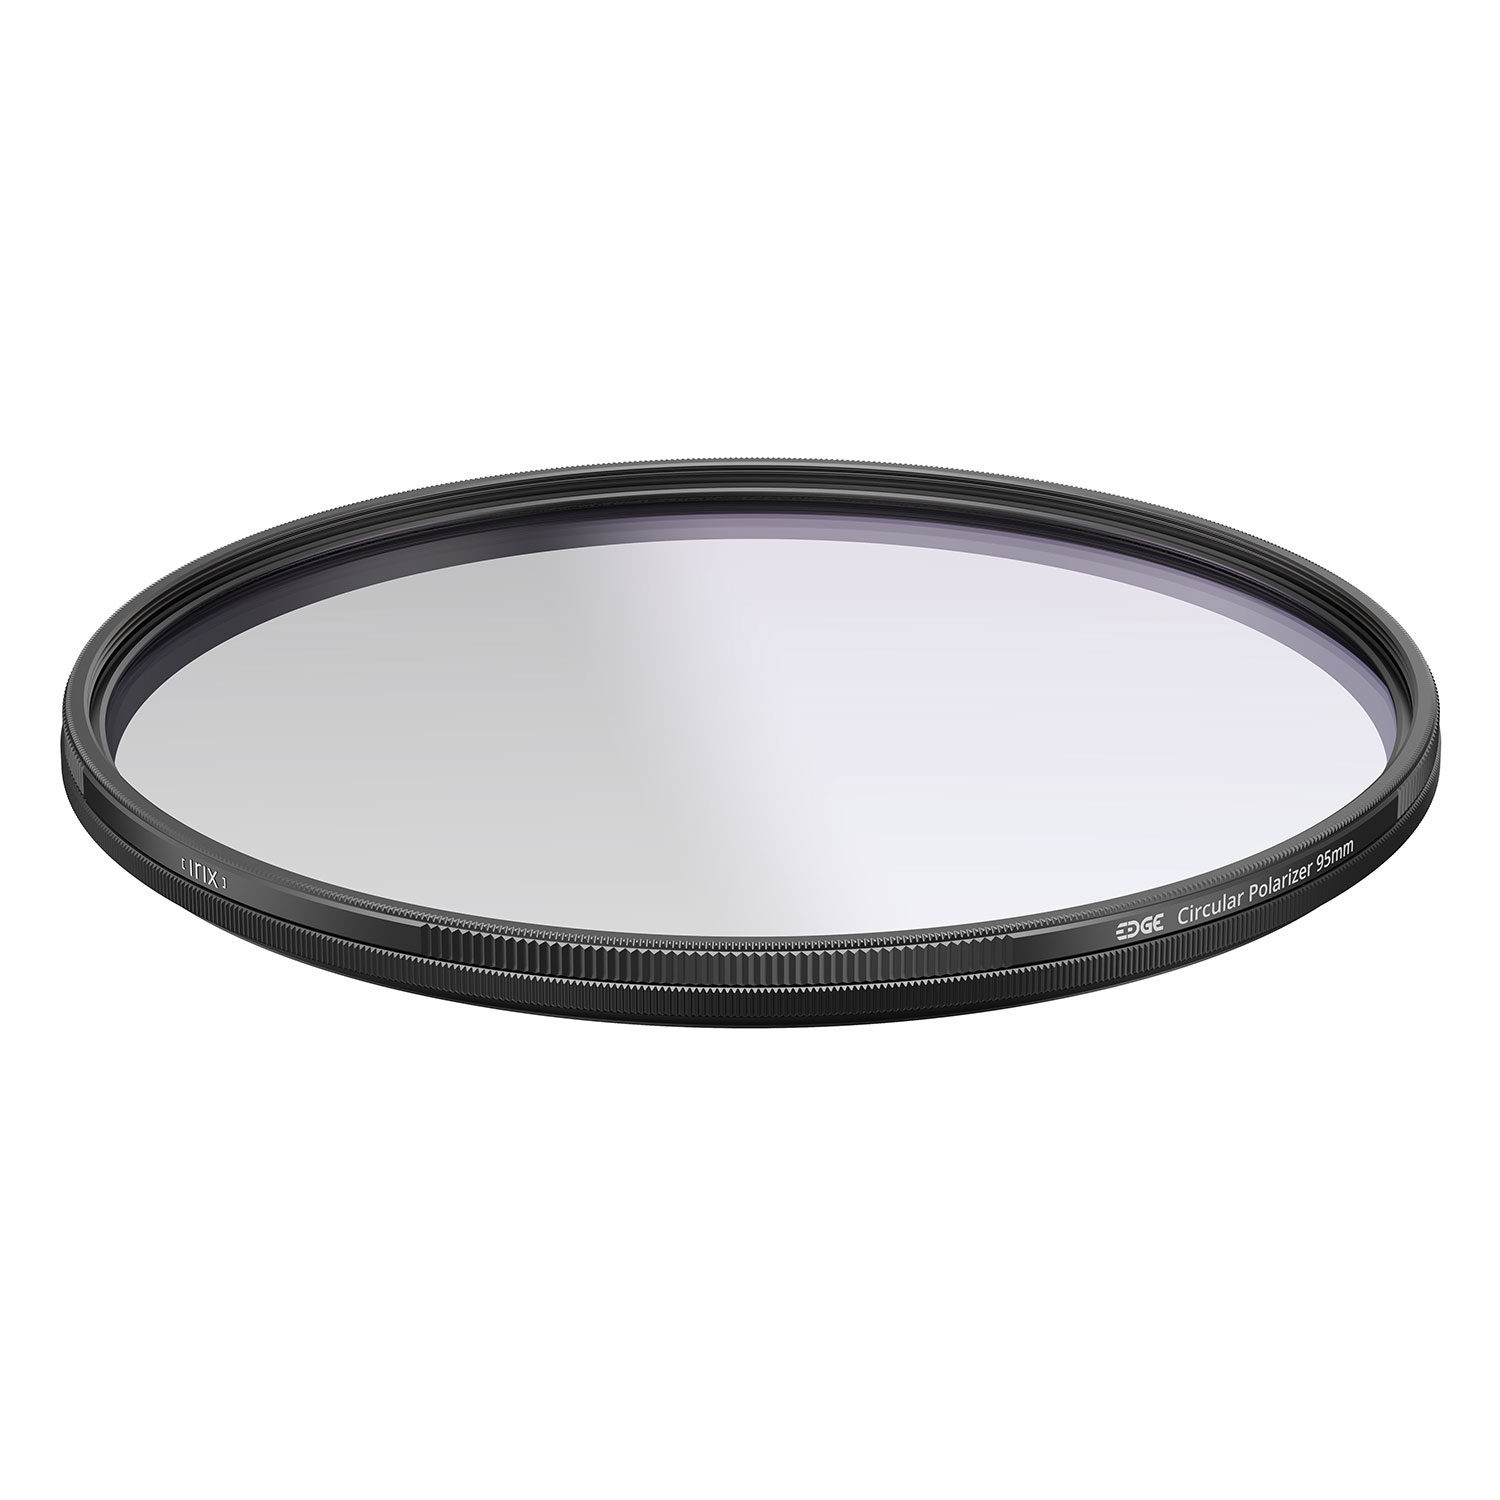 Irix Edge Circular Polarizer Filter 95mm